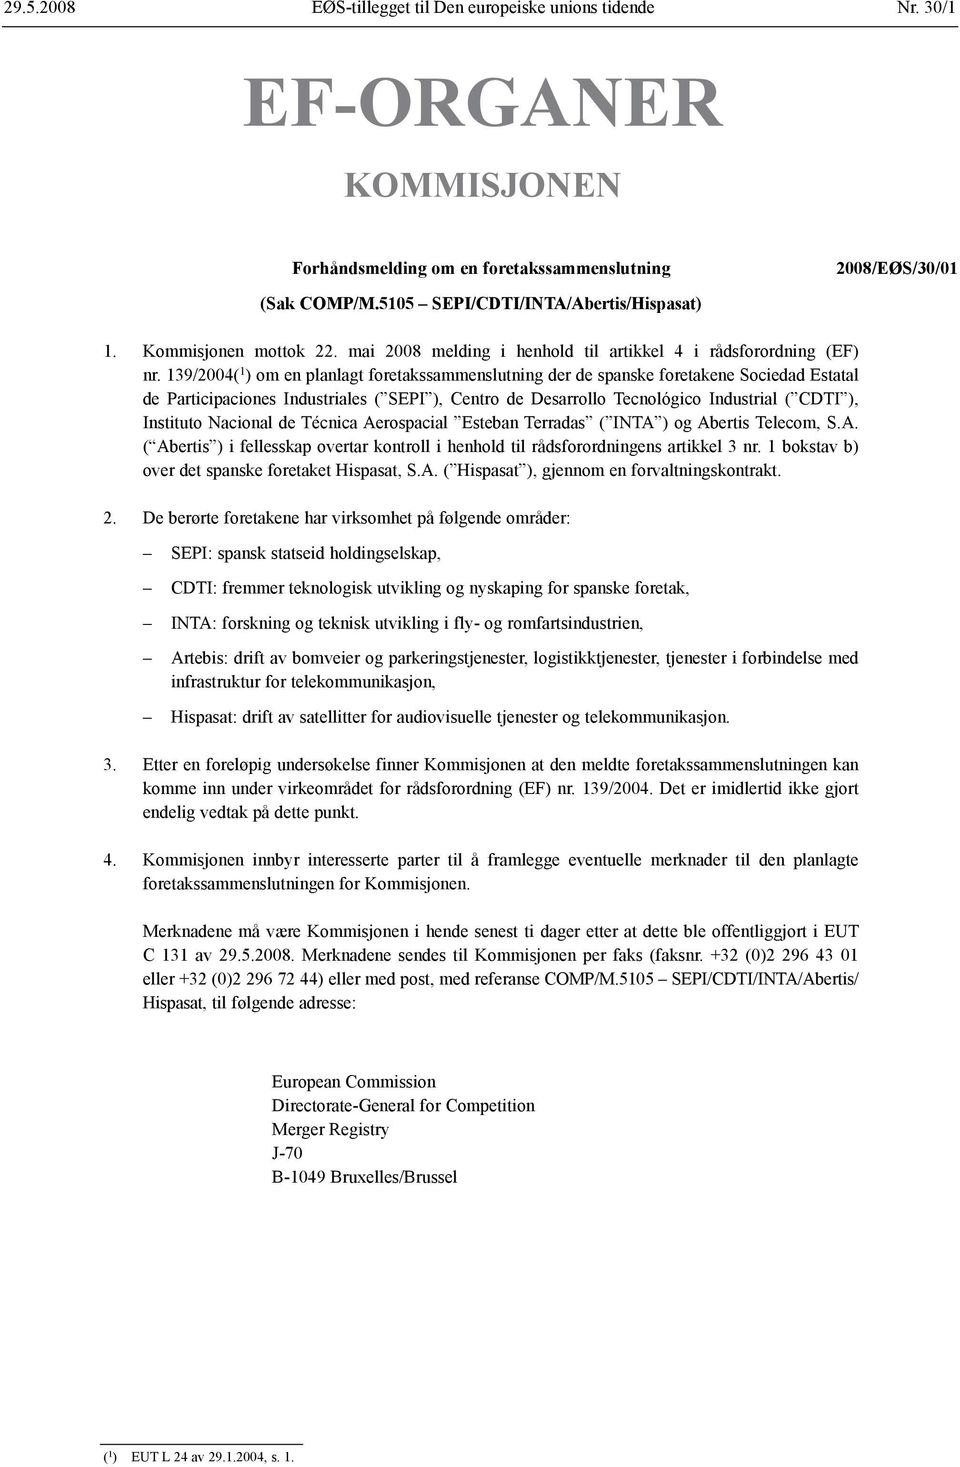 139/2004( 1 ) om en planlagt foretaks sammenslutning der de spanske foretakene Sociedad Estatal de Participaciones Industriales ( SEPI ), Centro de Desarrollo Tecnológico Industrial ( CDTI ),